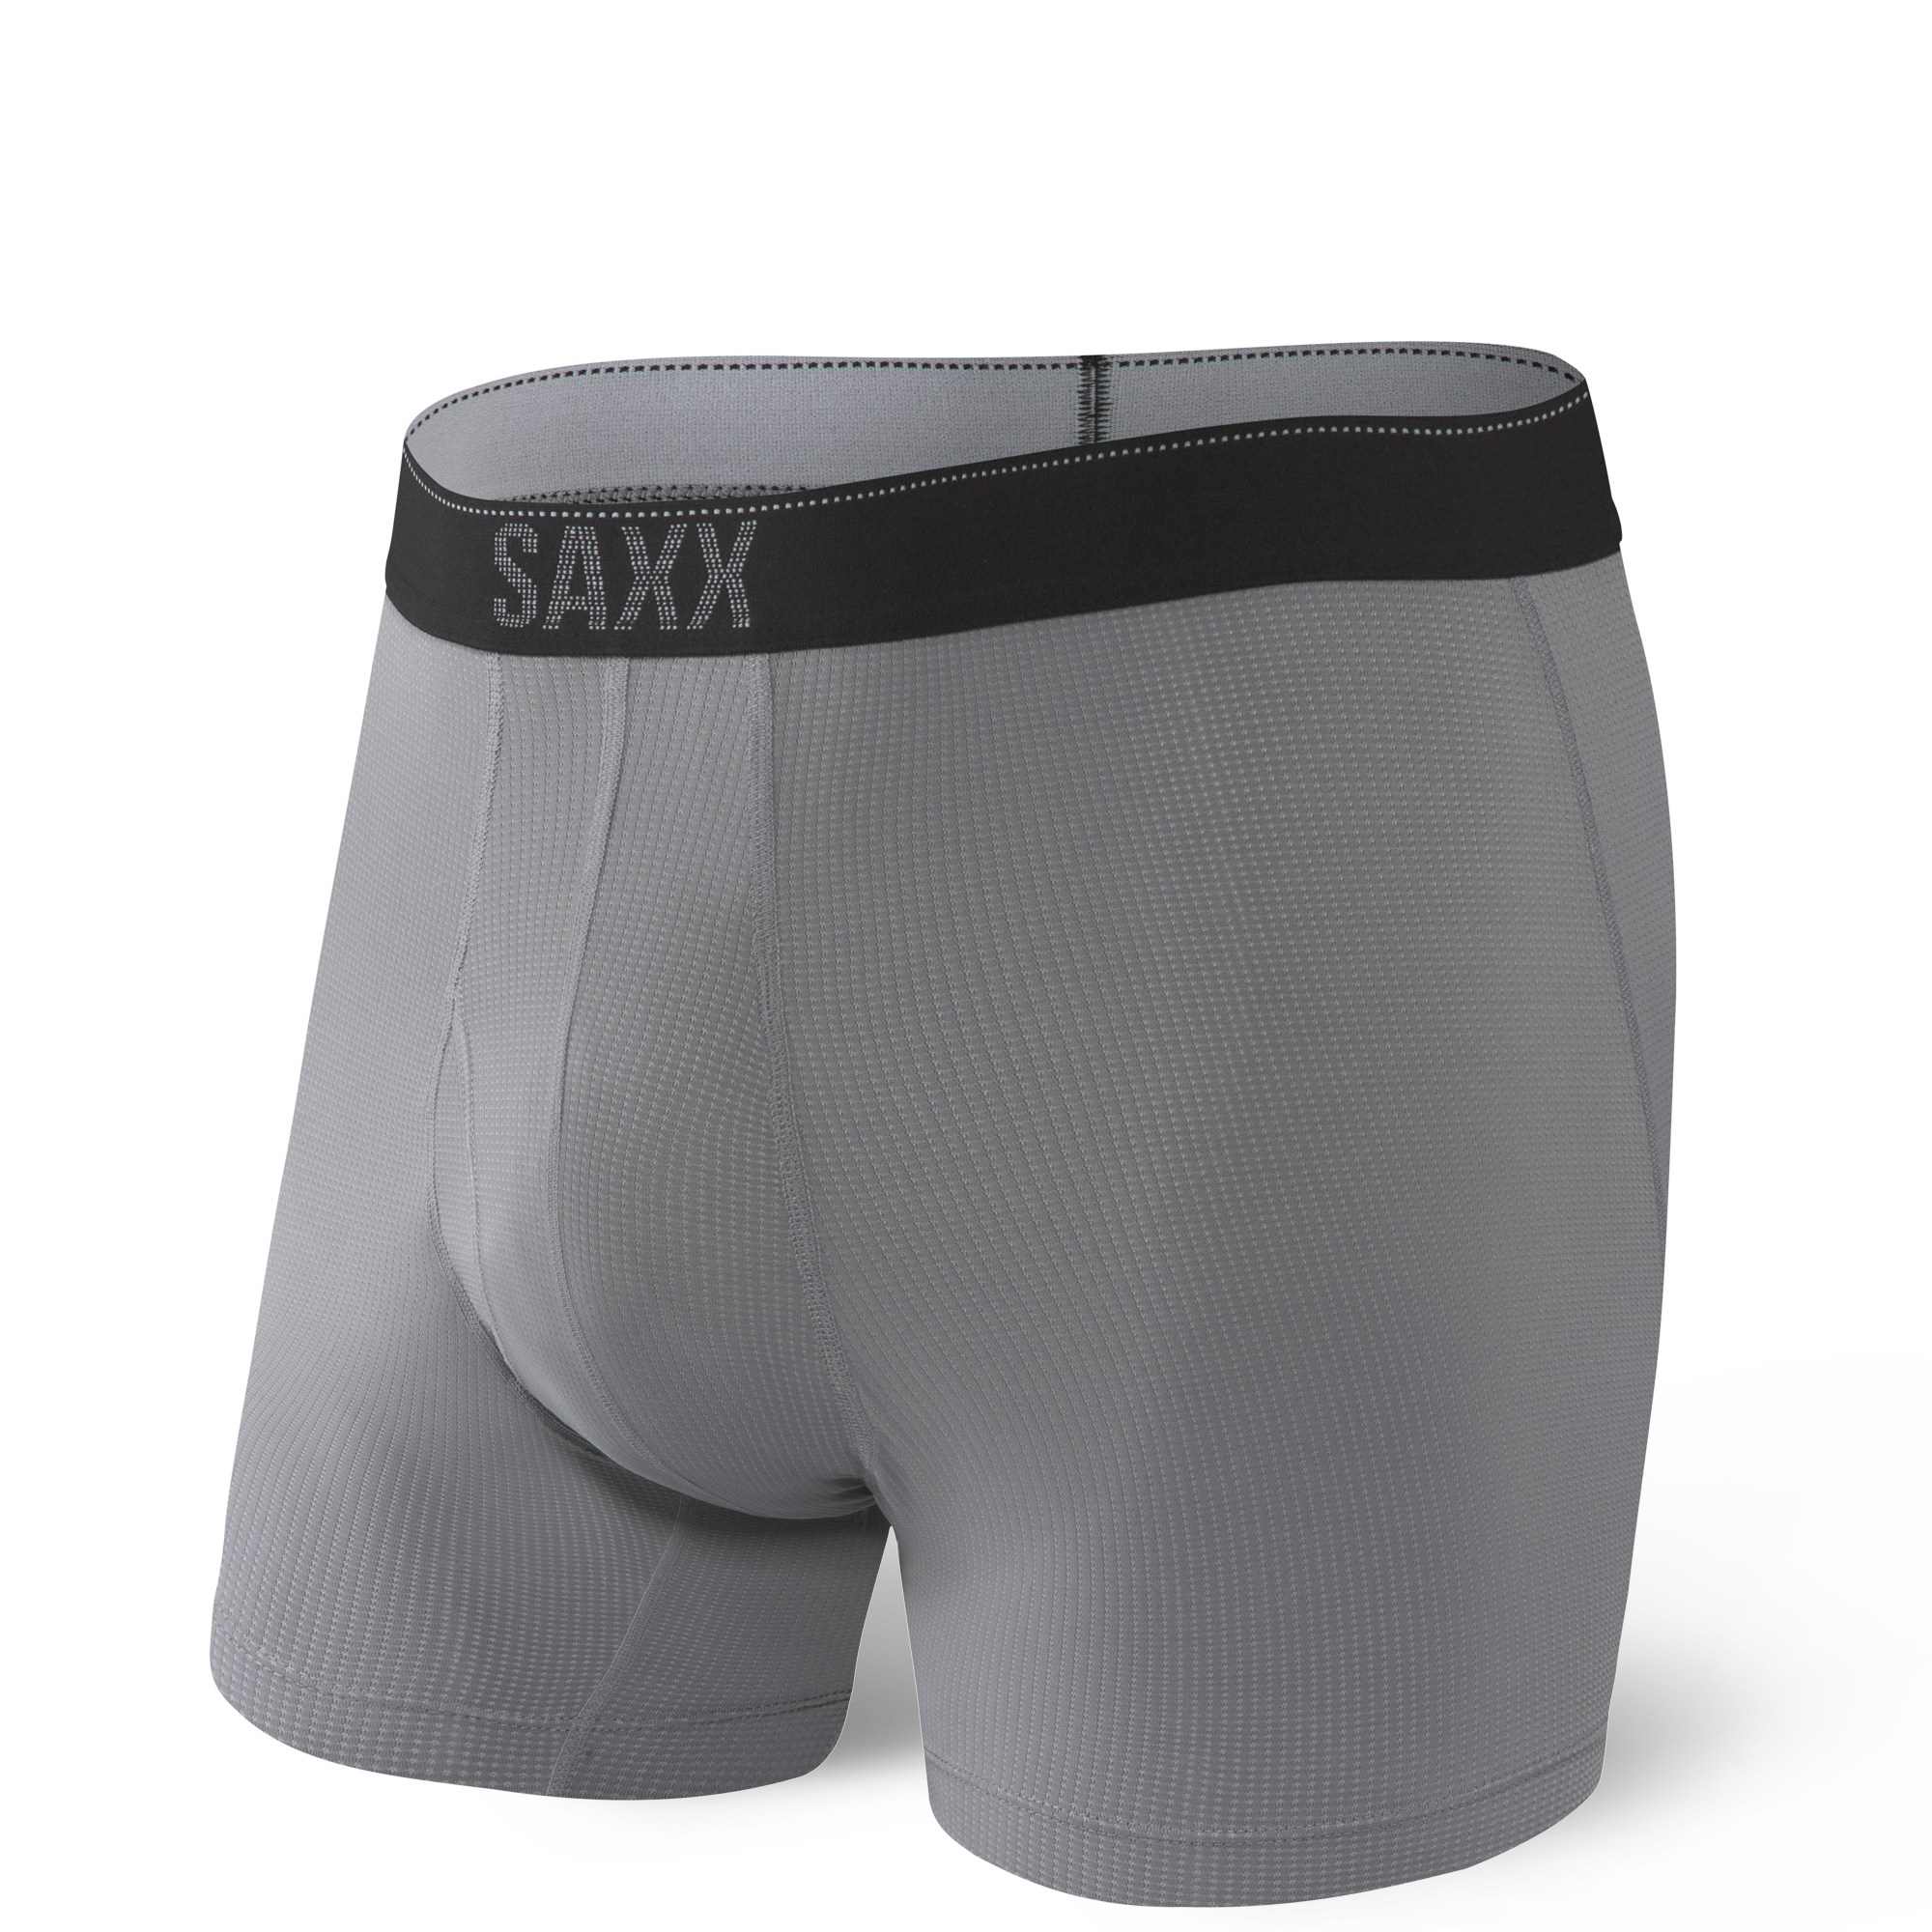 Quest Boxer Brief in Dark Charcoal II by SAXX Underwear Co. - Hansen's  Clothing